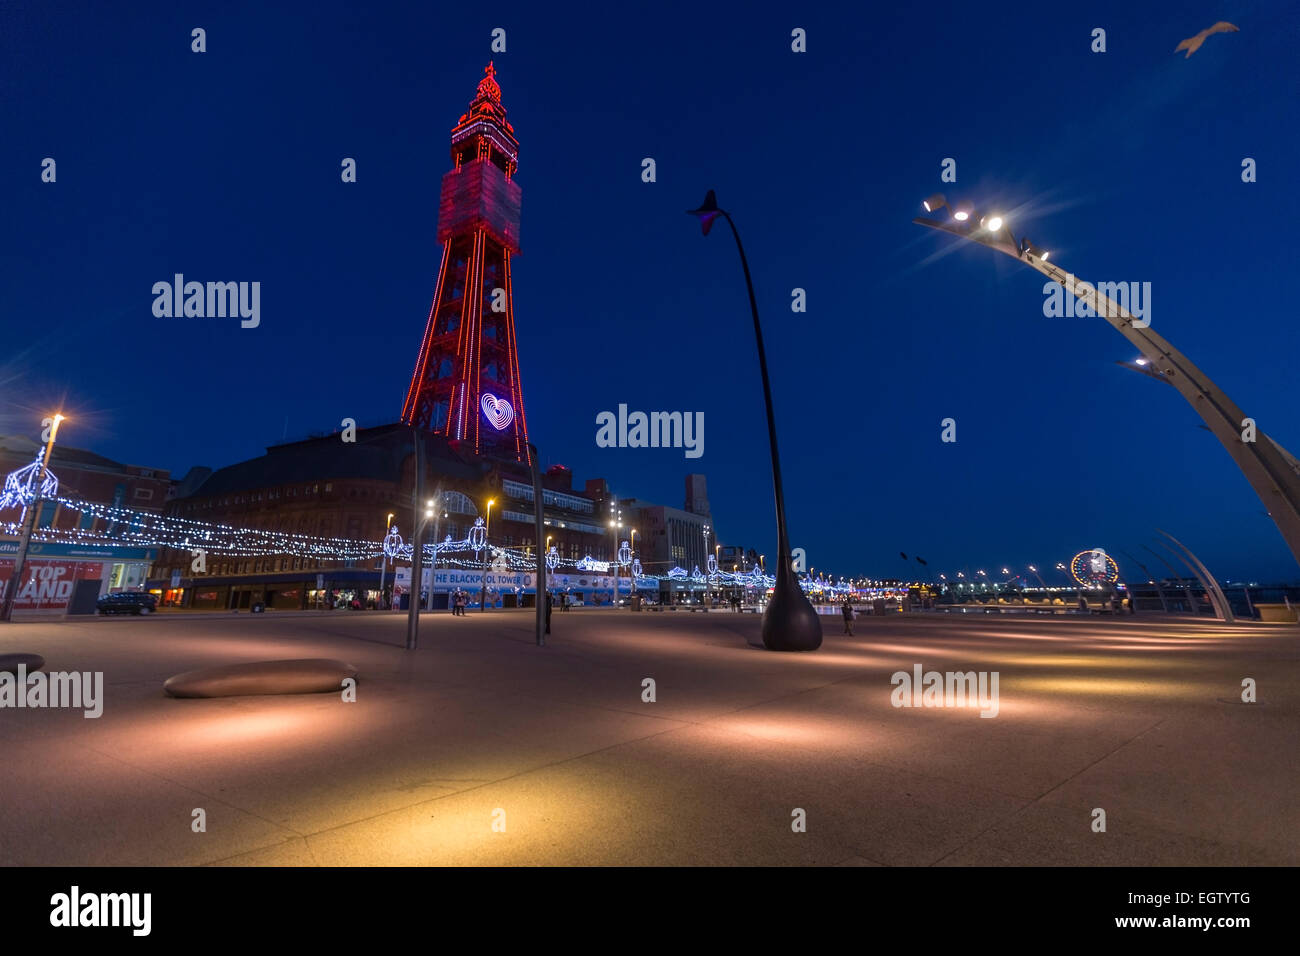 Blackpool illuminations de nuit avec la tour illuminée dans la promenade Banque D'Images